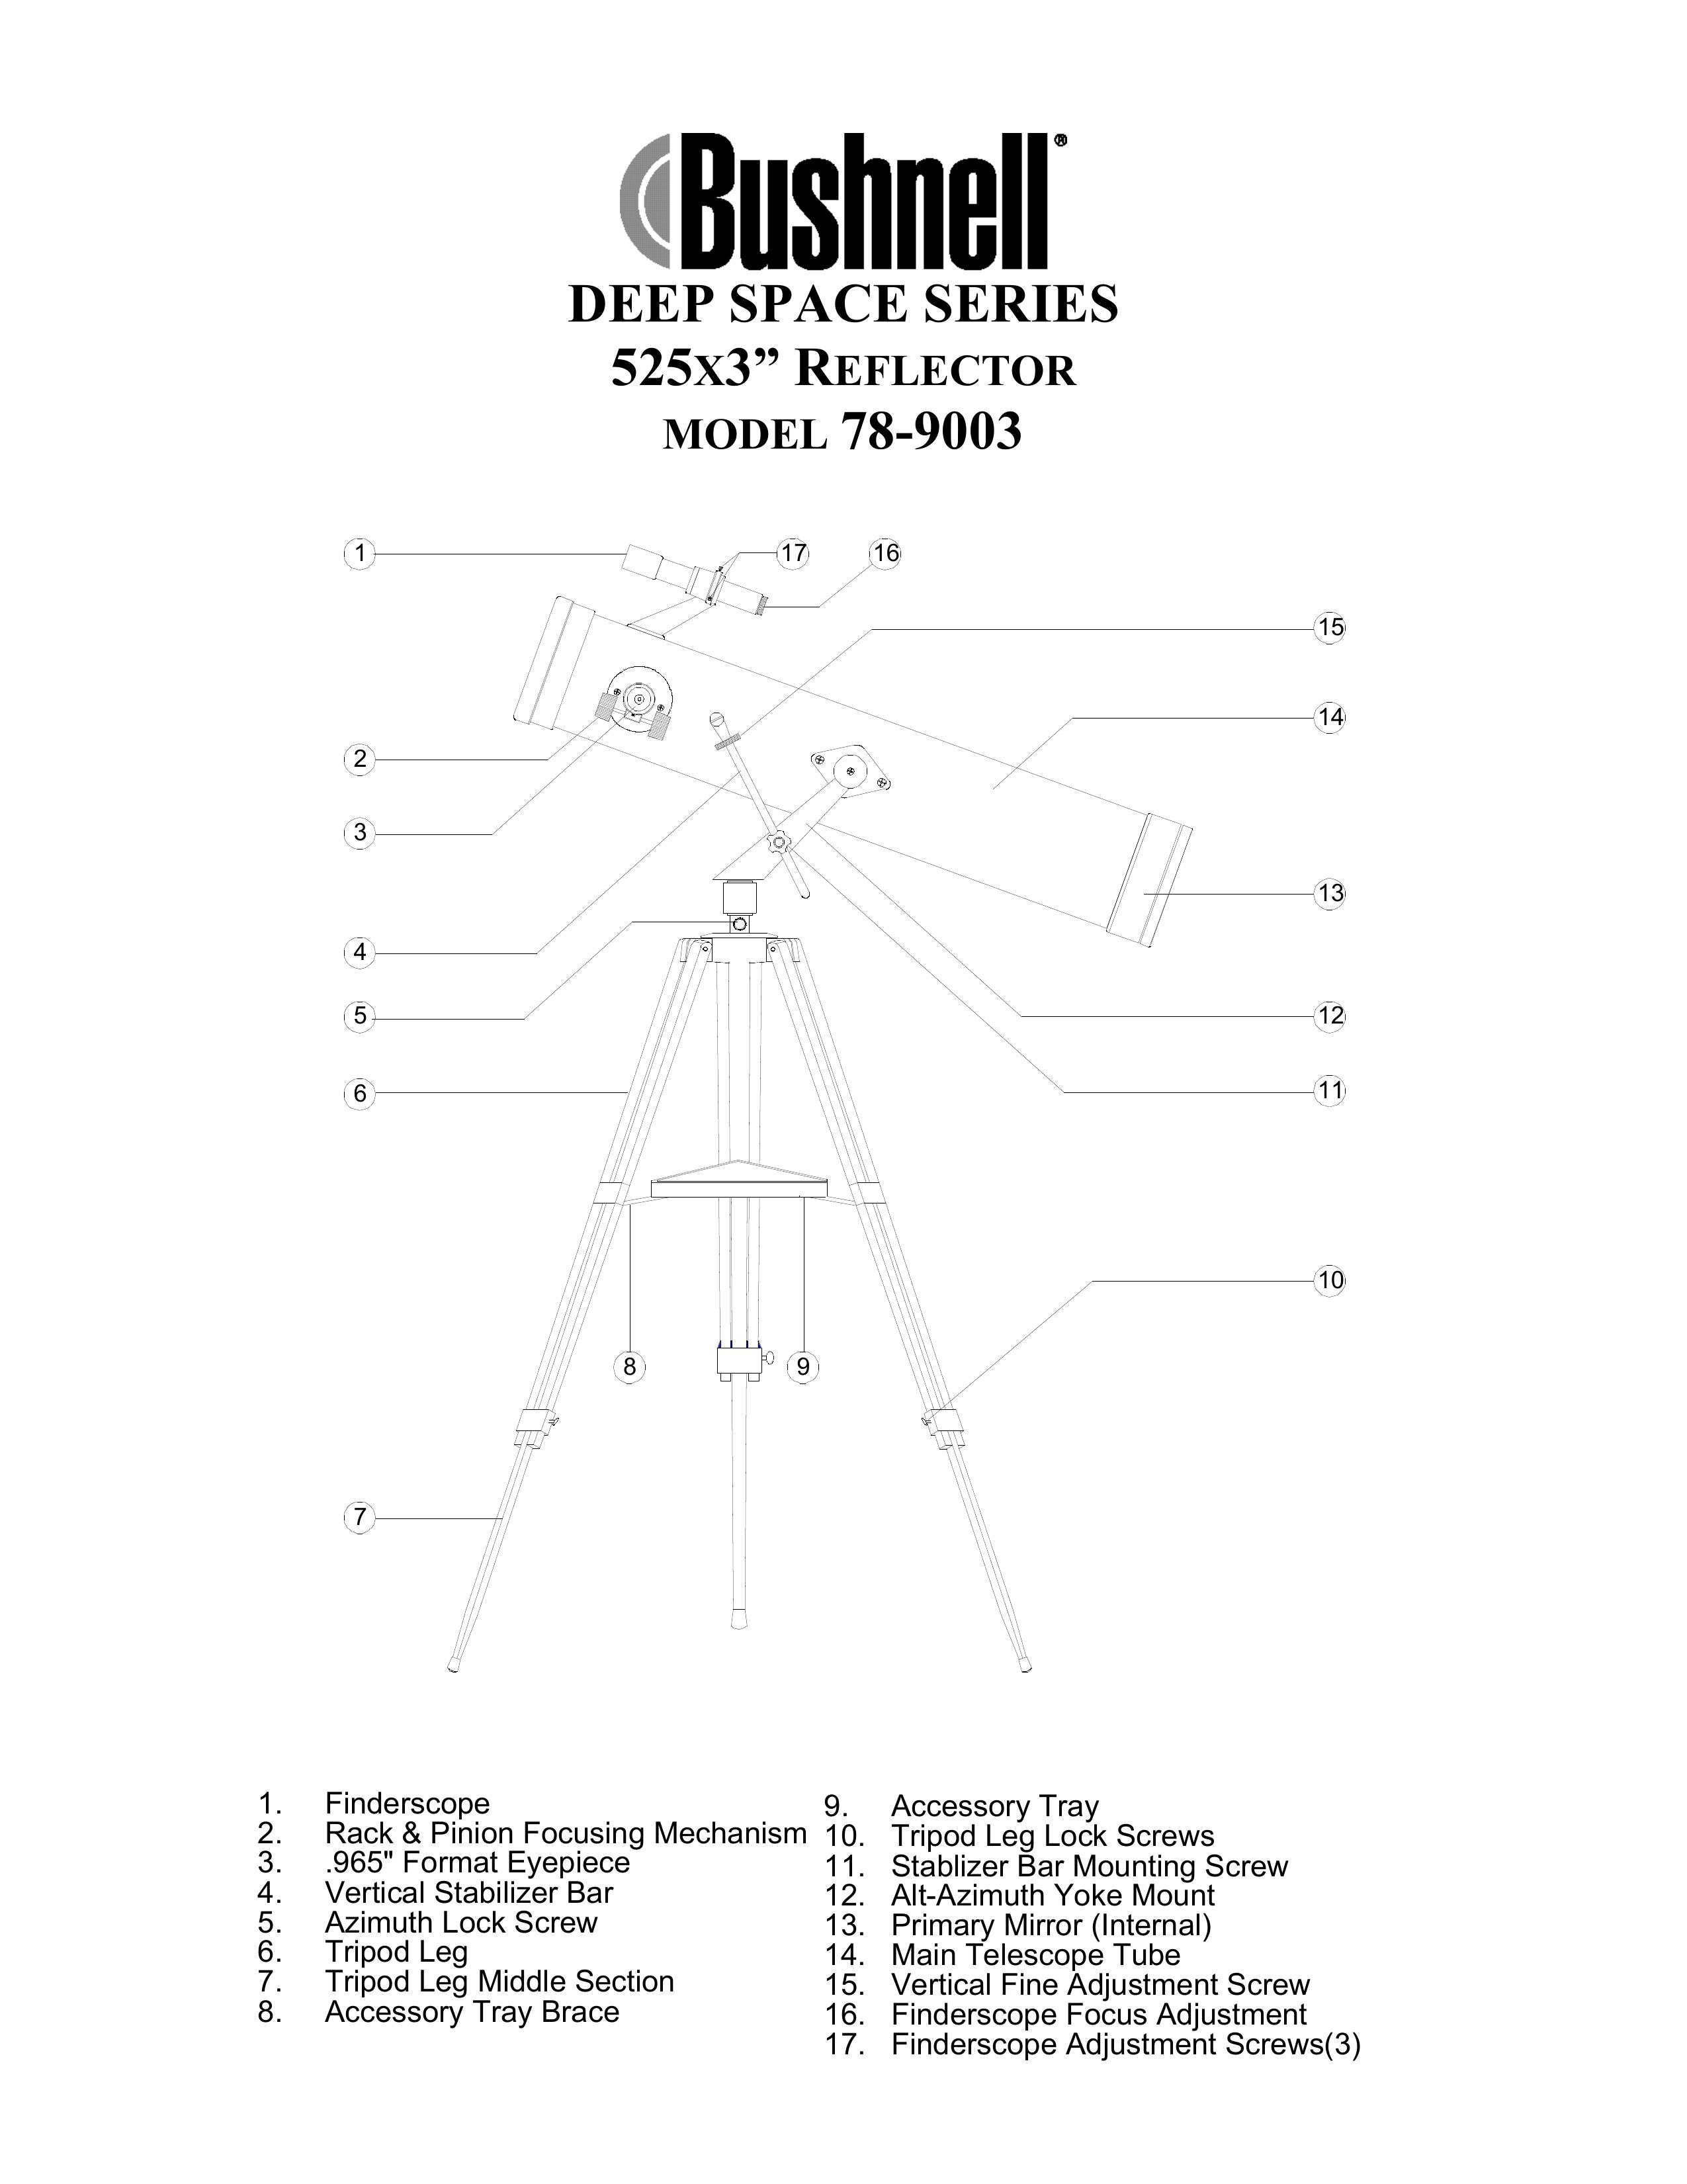 Bushnell 78-9003 Telescope User Manual